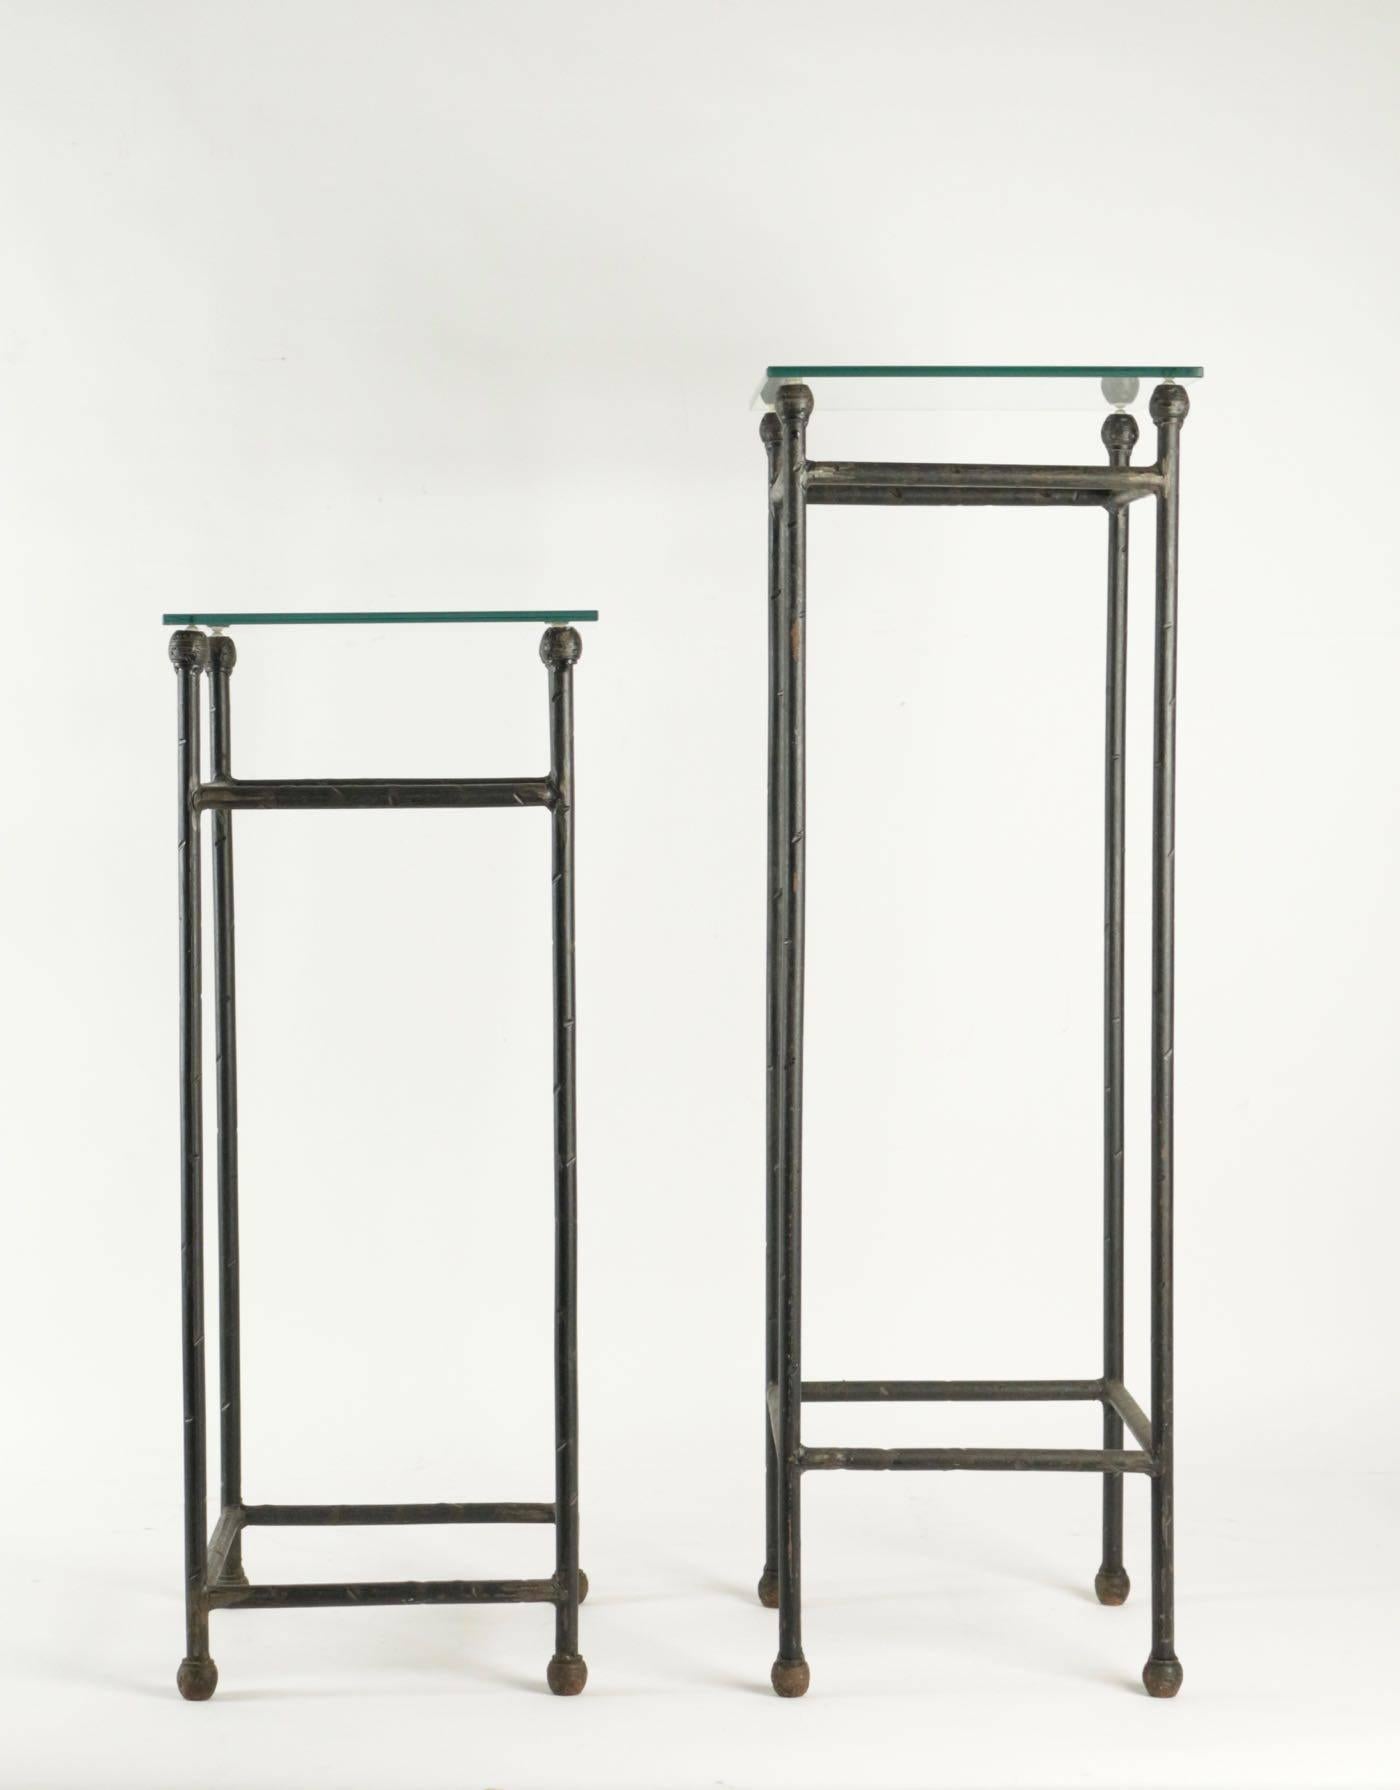 Deux consoles en fer forgé sous verre dans un style industriel 20ème siècle.
Mesures : H 93cm, L 30cm, P 30cm
H 76cm, L 30cm, P 30cm.